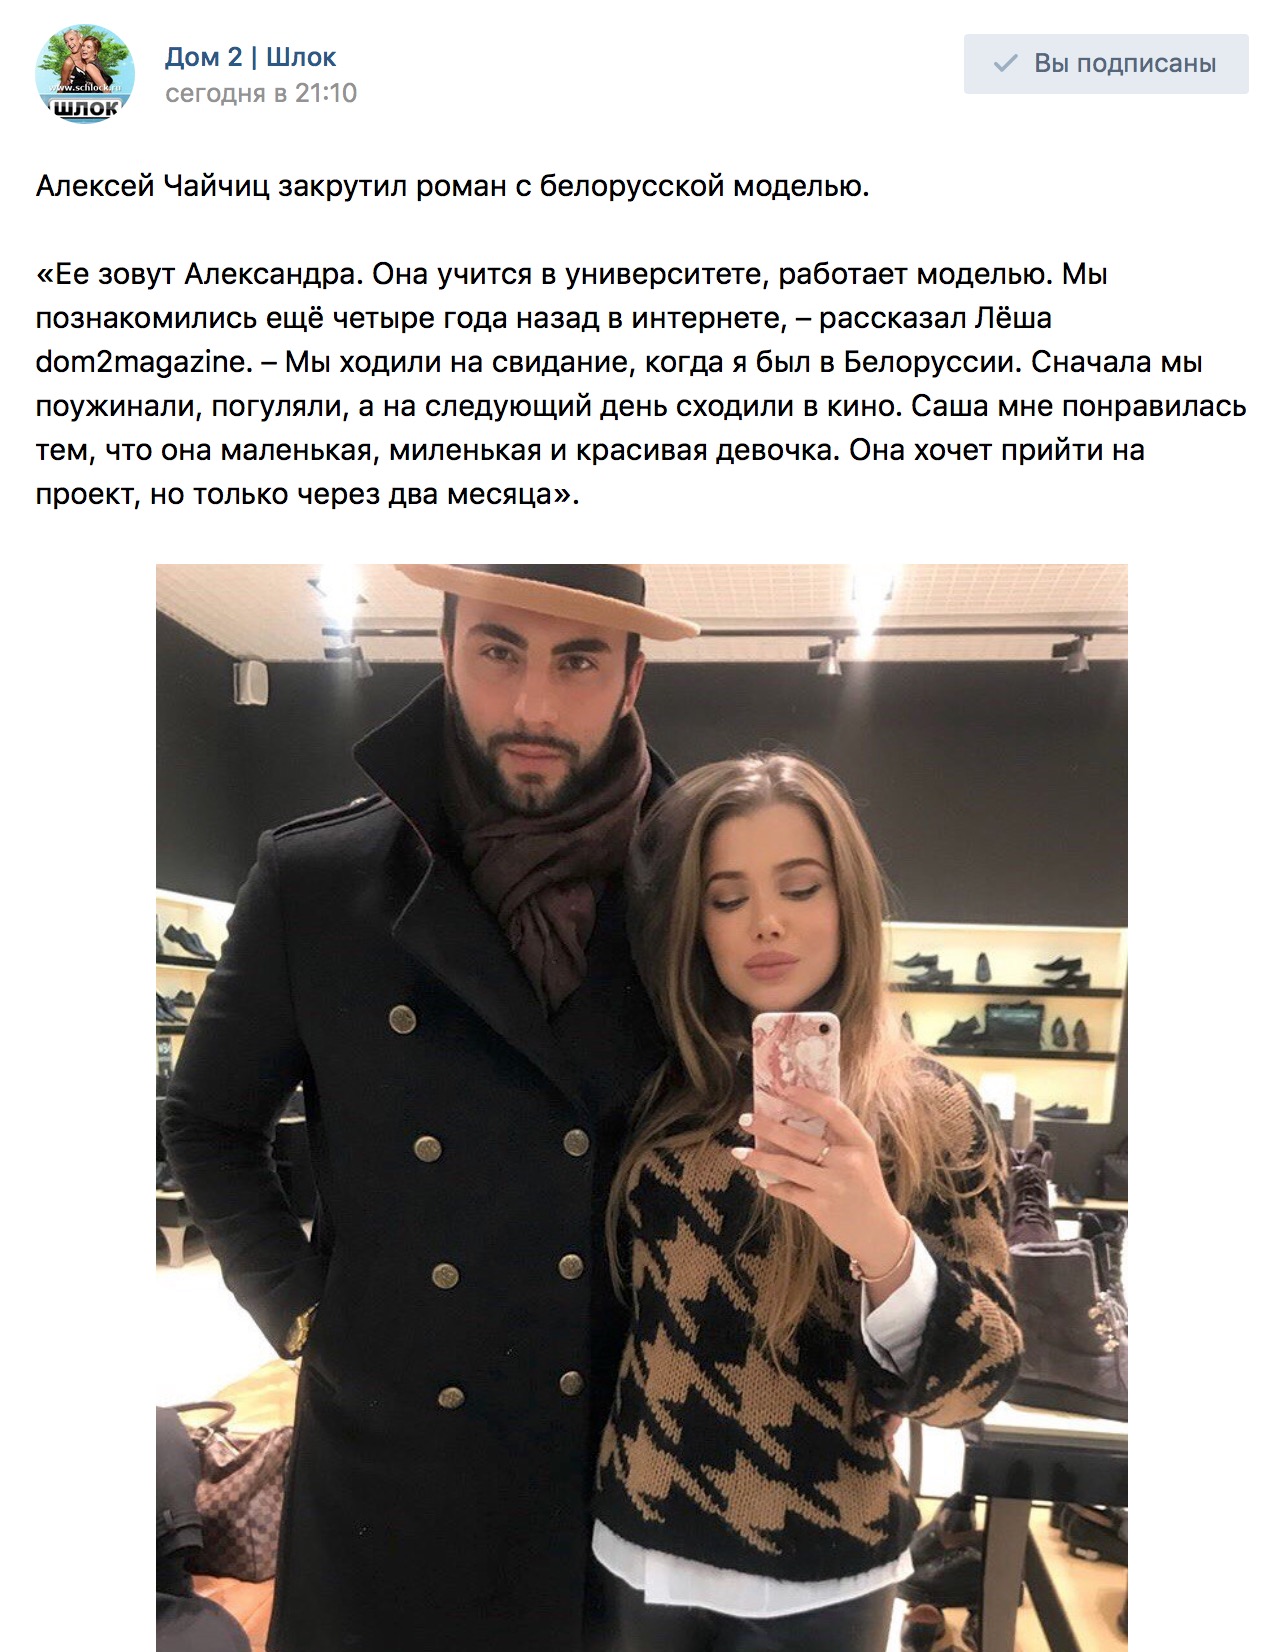 Алексей Чайчиц закрутил роман с белорусской моделью